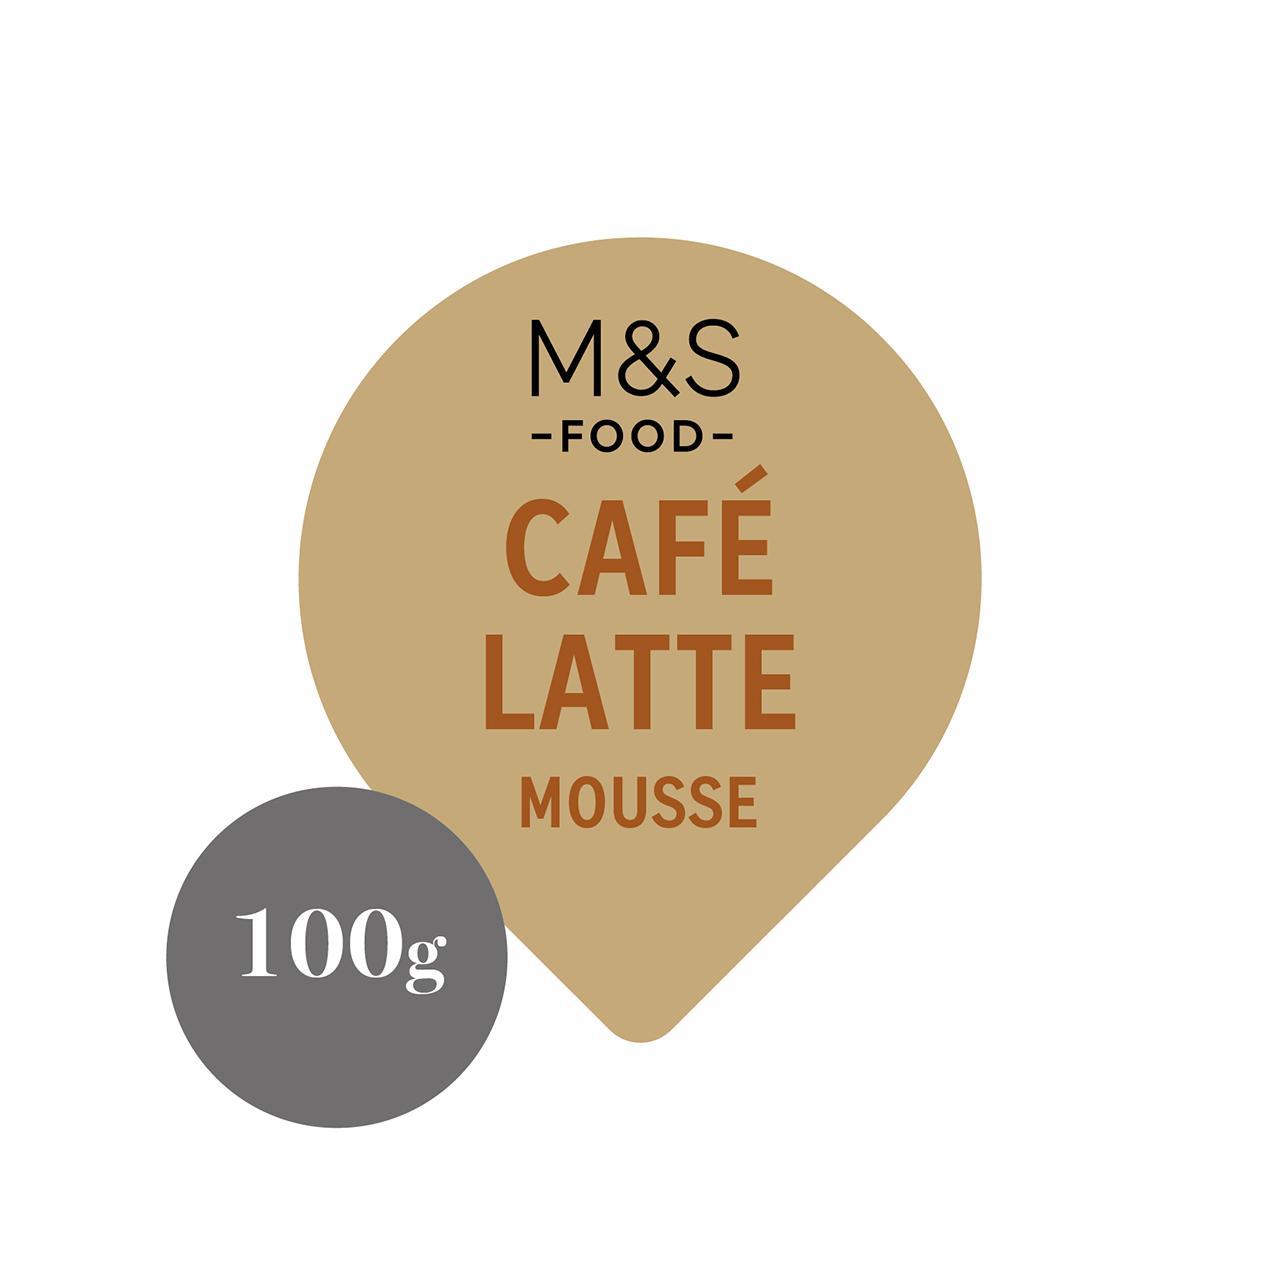 M&S Cafe Latte Mousse